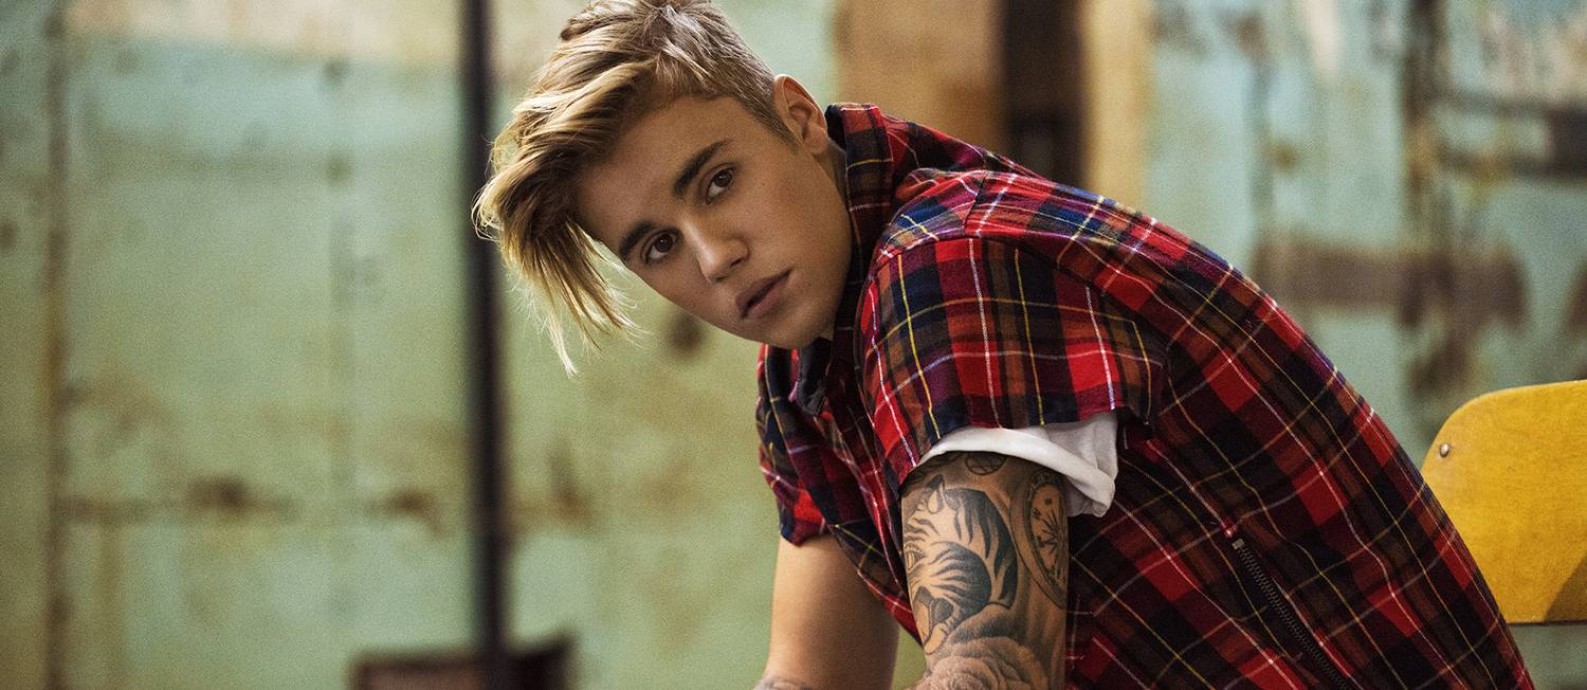 O cantor canadense Justin Bieber Foto: Divulgação